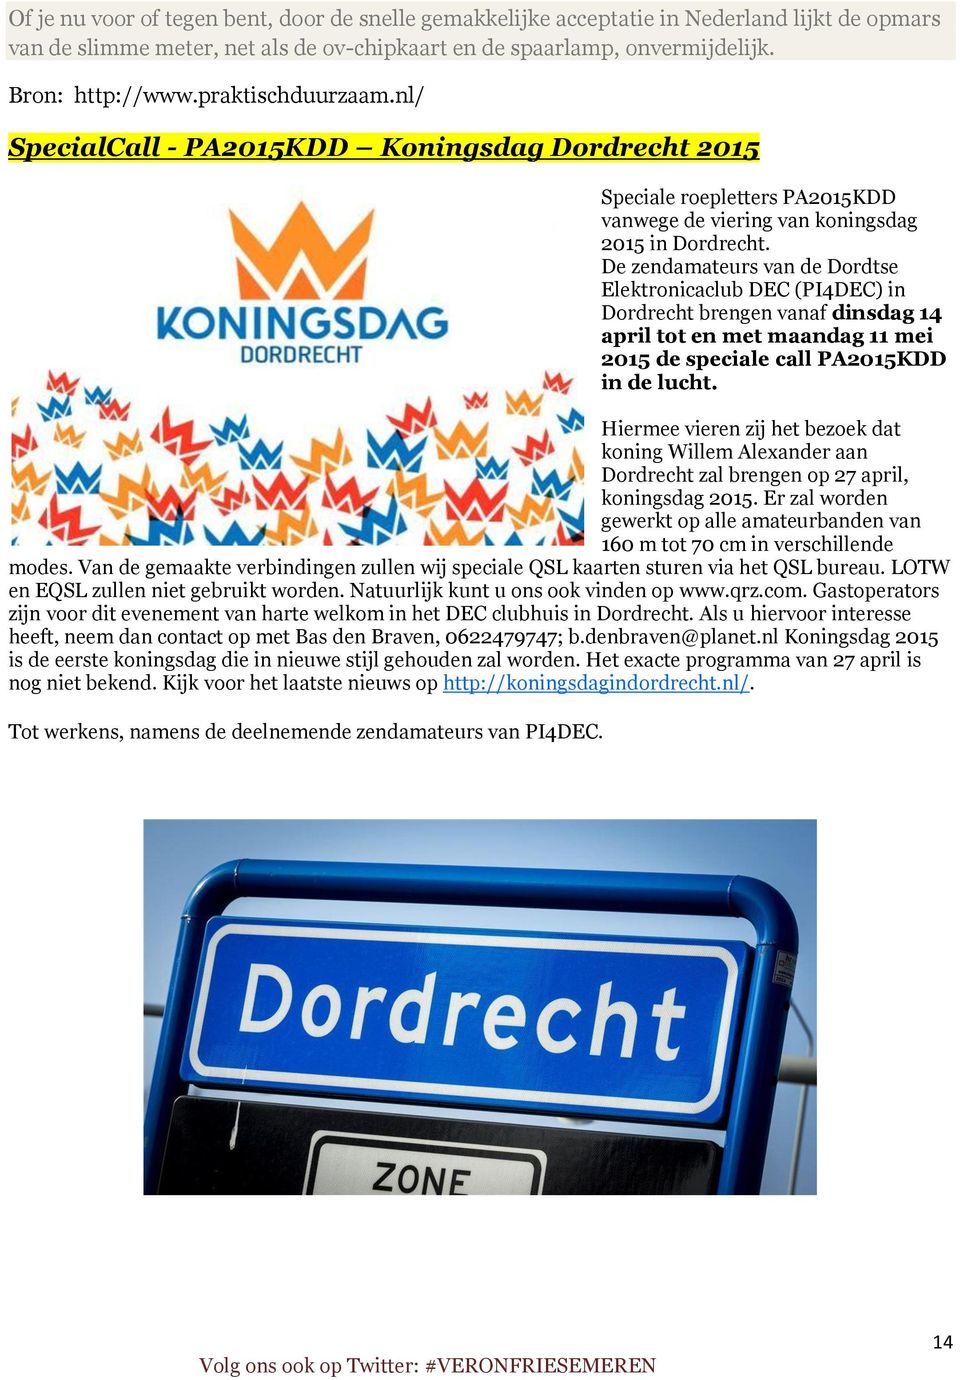 De zendamateurs van de Dordtse Elektronicaclub DEC (PI4DEC) in Dordrecht brengen vanaf dinsdag 14 april tot en met maandag 11 mei 2015 de speciale call PA2015KDD in de lucht.